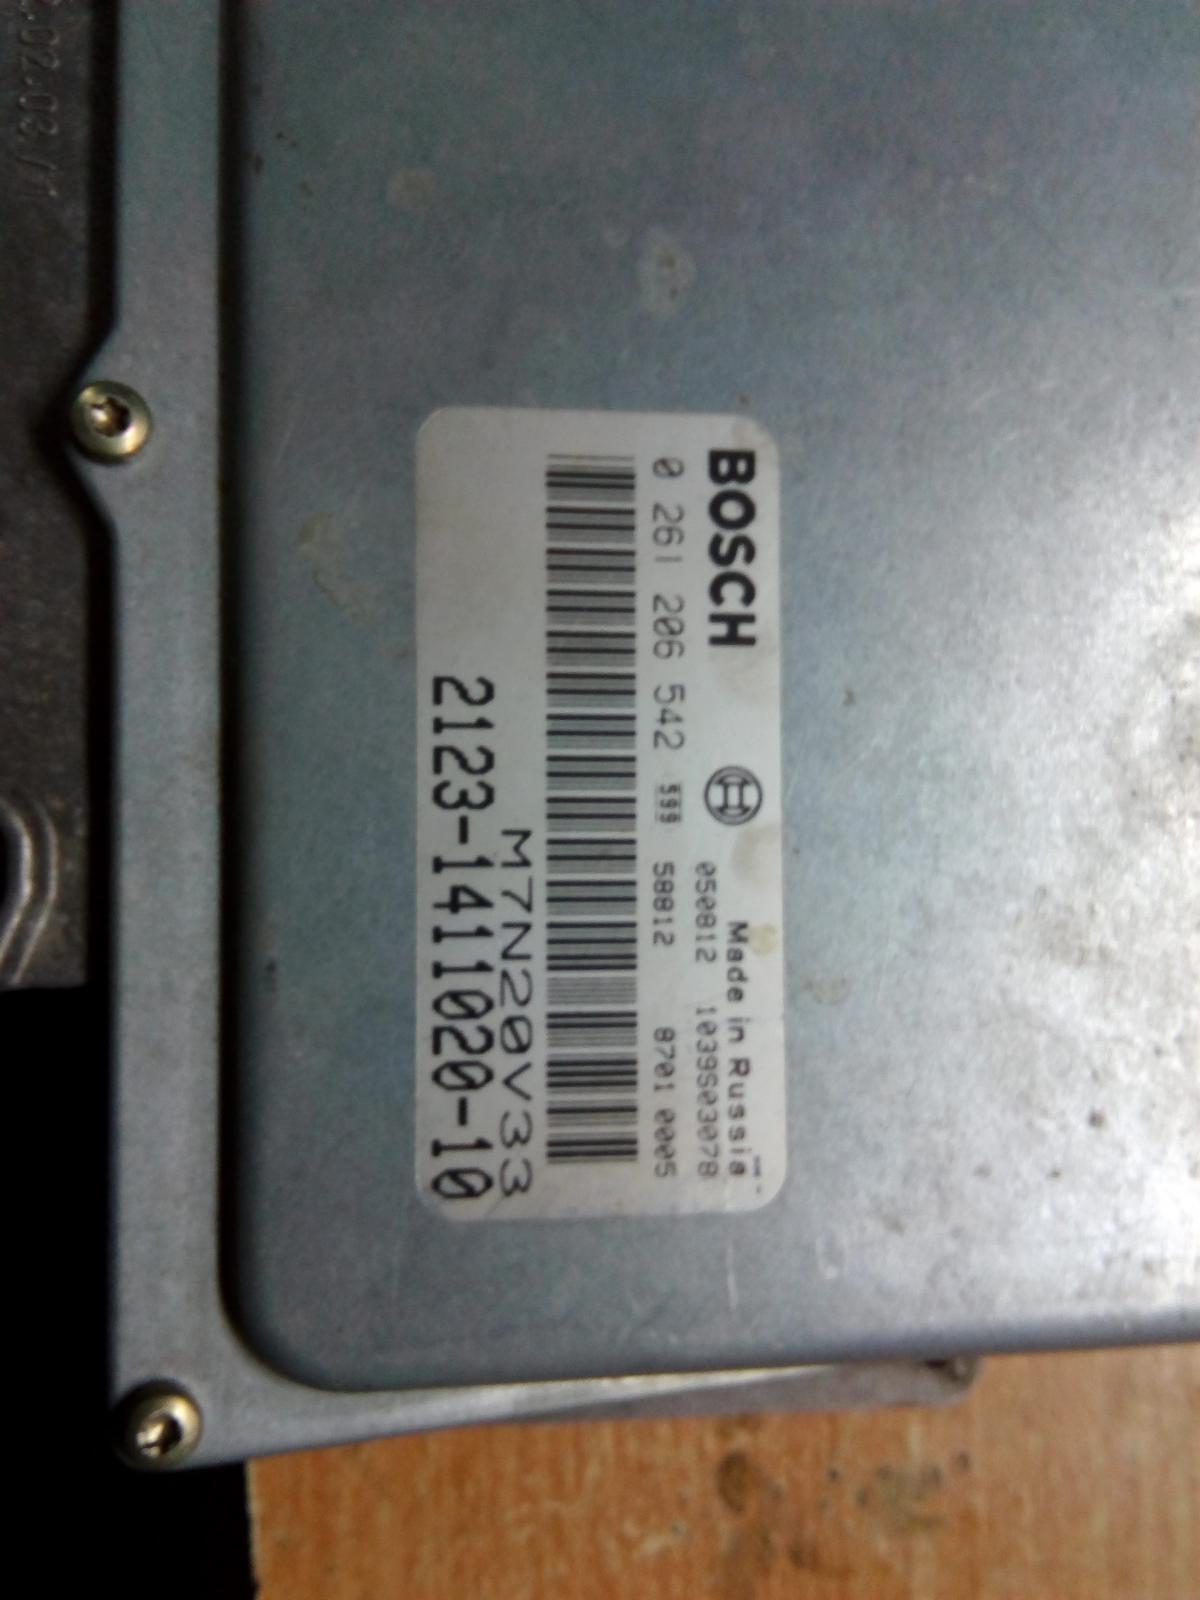 Bosch mp 7.0